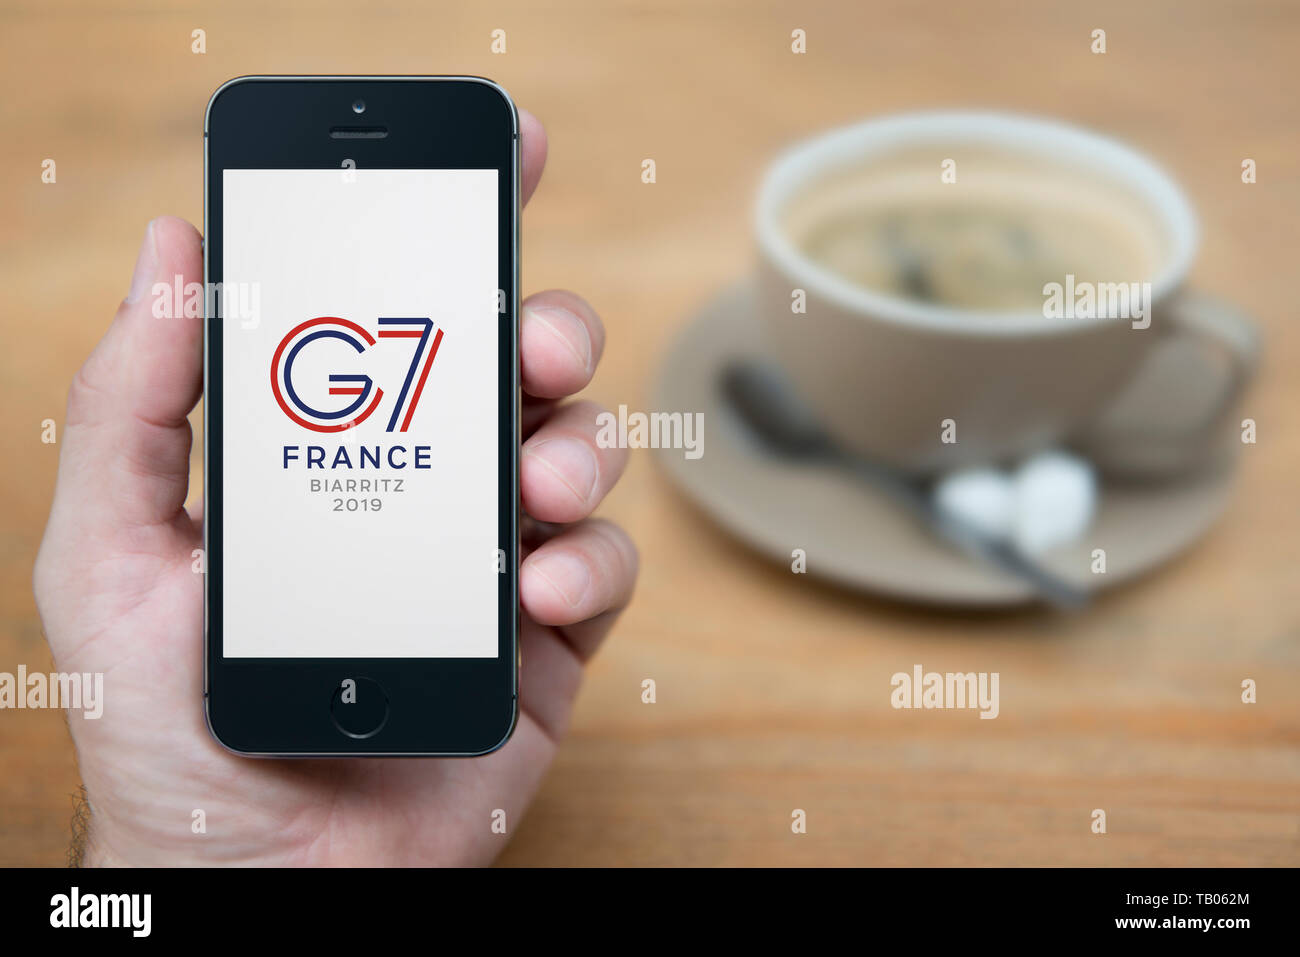 Un homme se penche sur son iPhone qui affiche le G7 France Biarritz logo du Sommet (usage éditorial uniquement). Banque D'Images